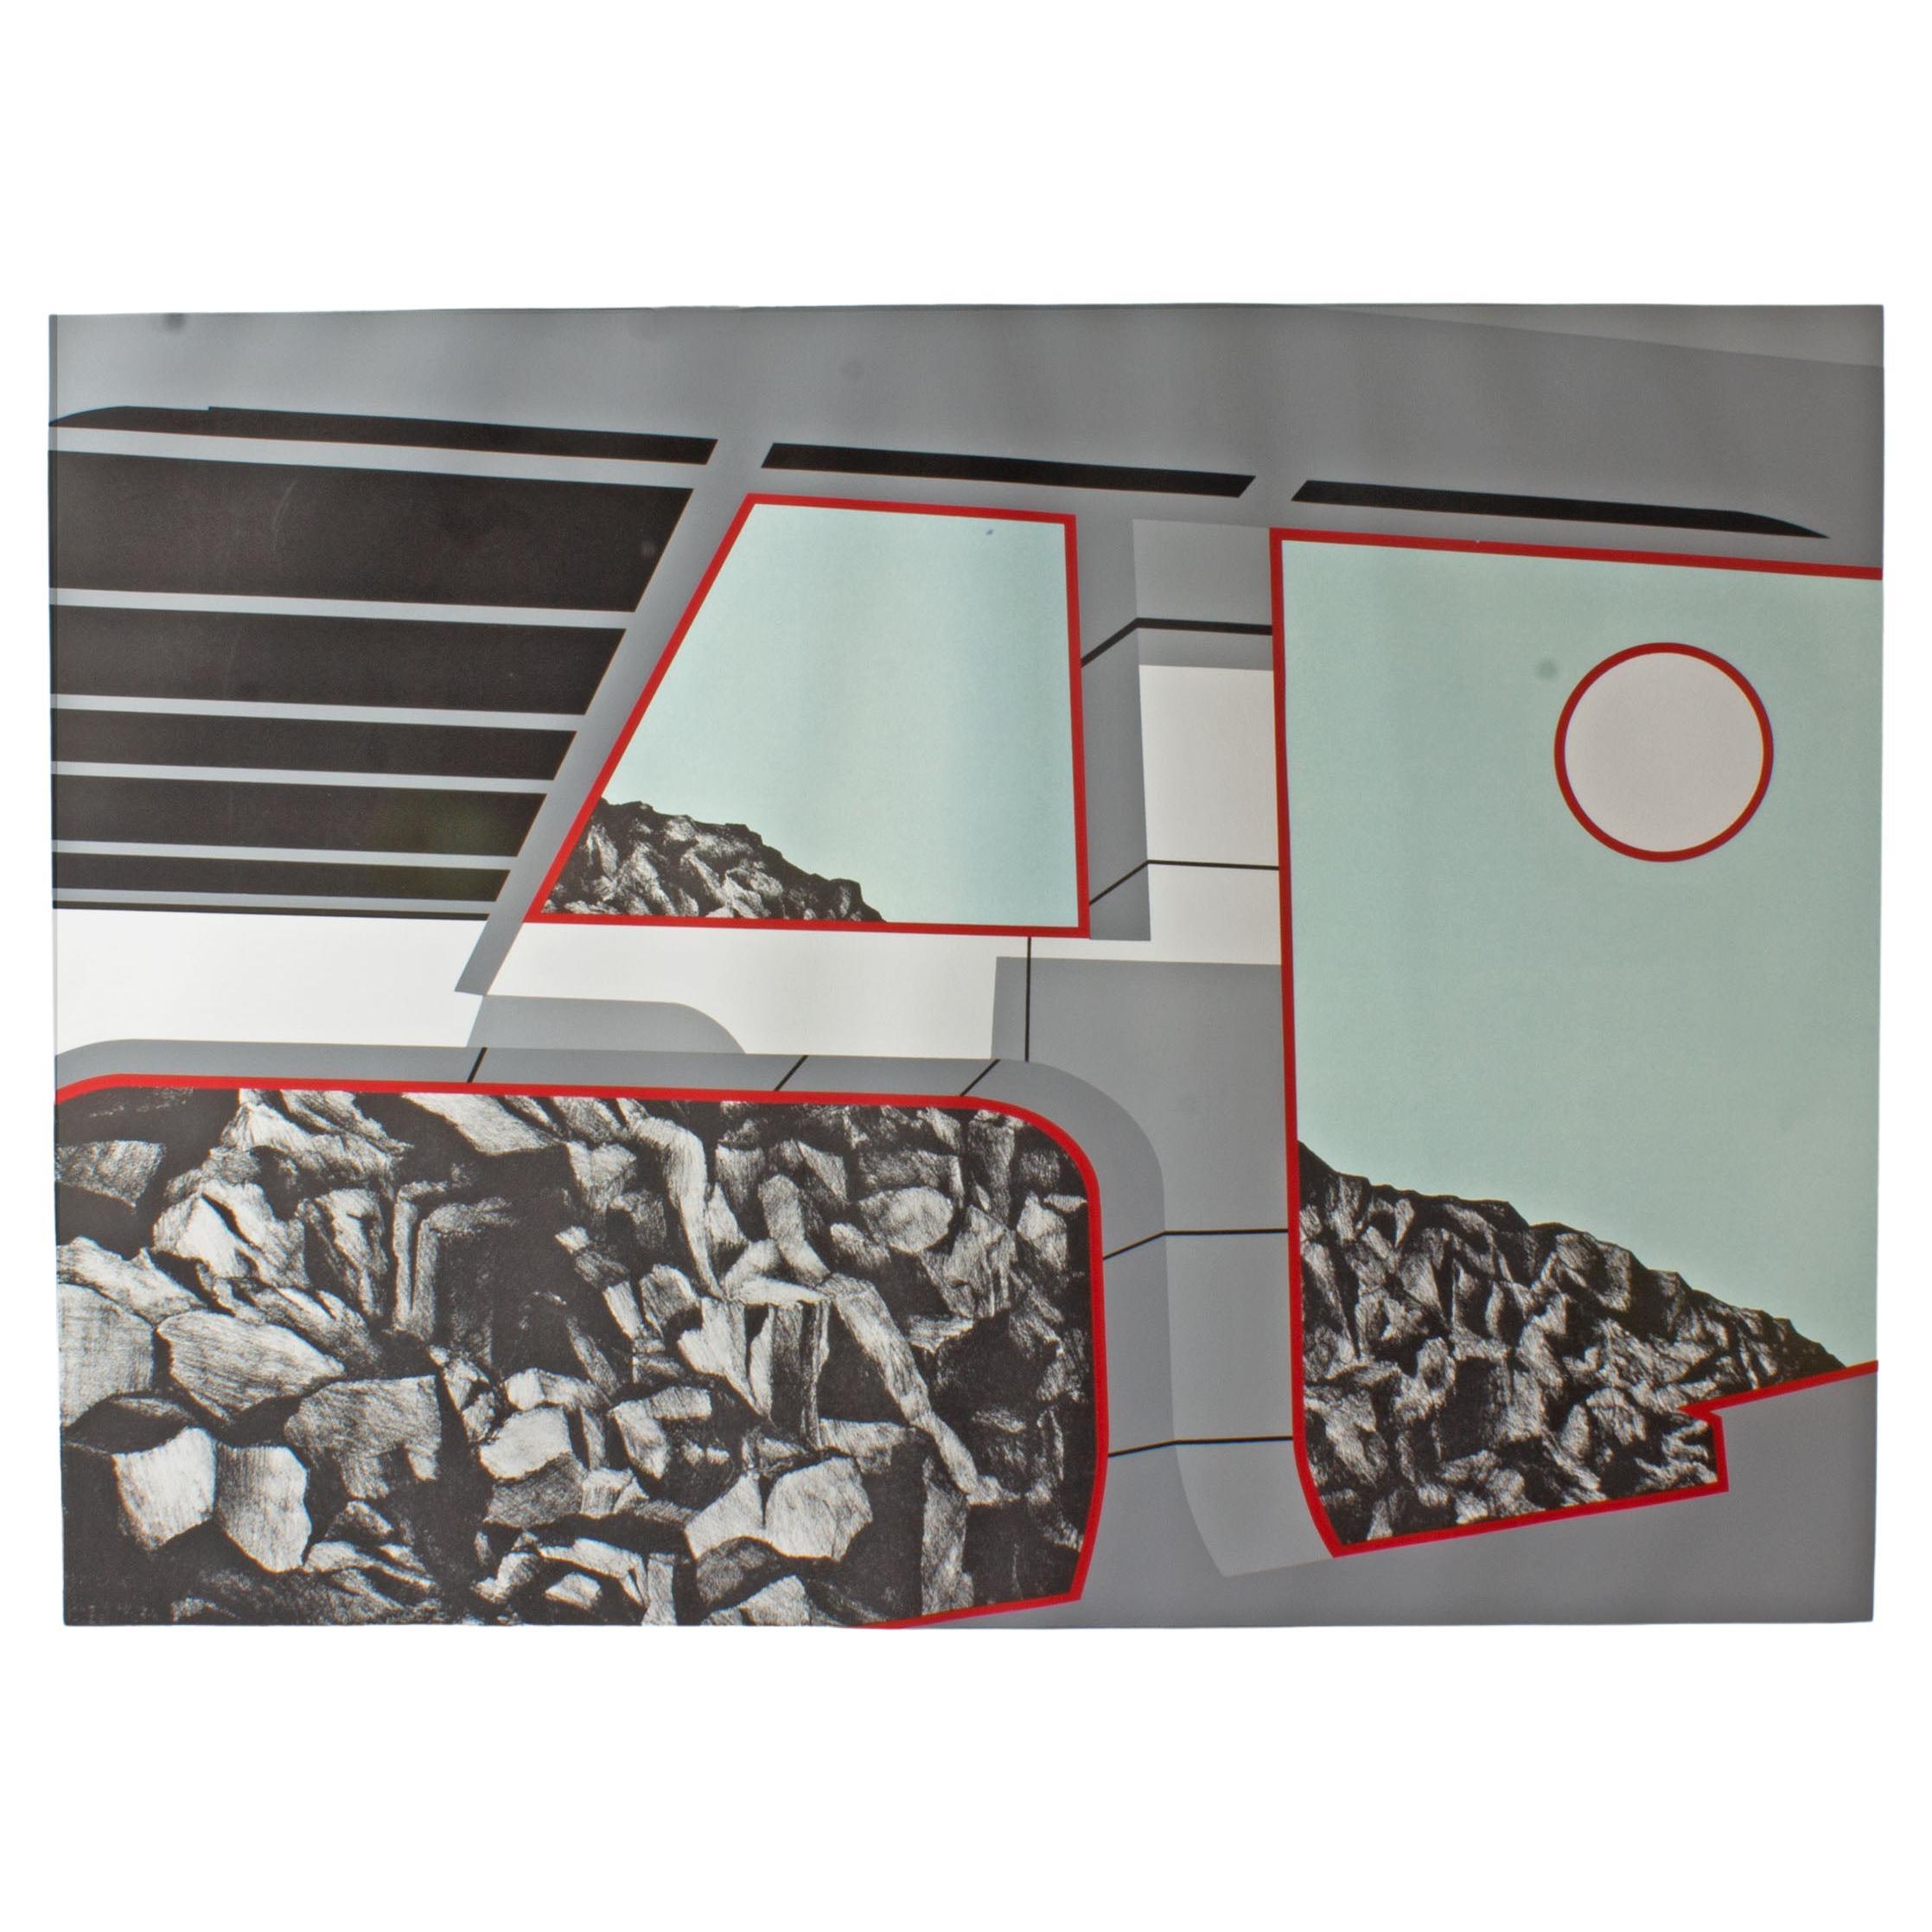 Stampa serigrafica su carta con prova d'artista del 1978 dell'artista e stampatore americano Allan D'Arcangelo (1930-1998). Questa stampa Pop Art in azzurro, grigio, nero, rosso e bianco raffigura una vista rocciosa dall'interno di un veicolo di